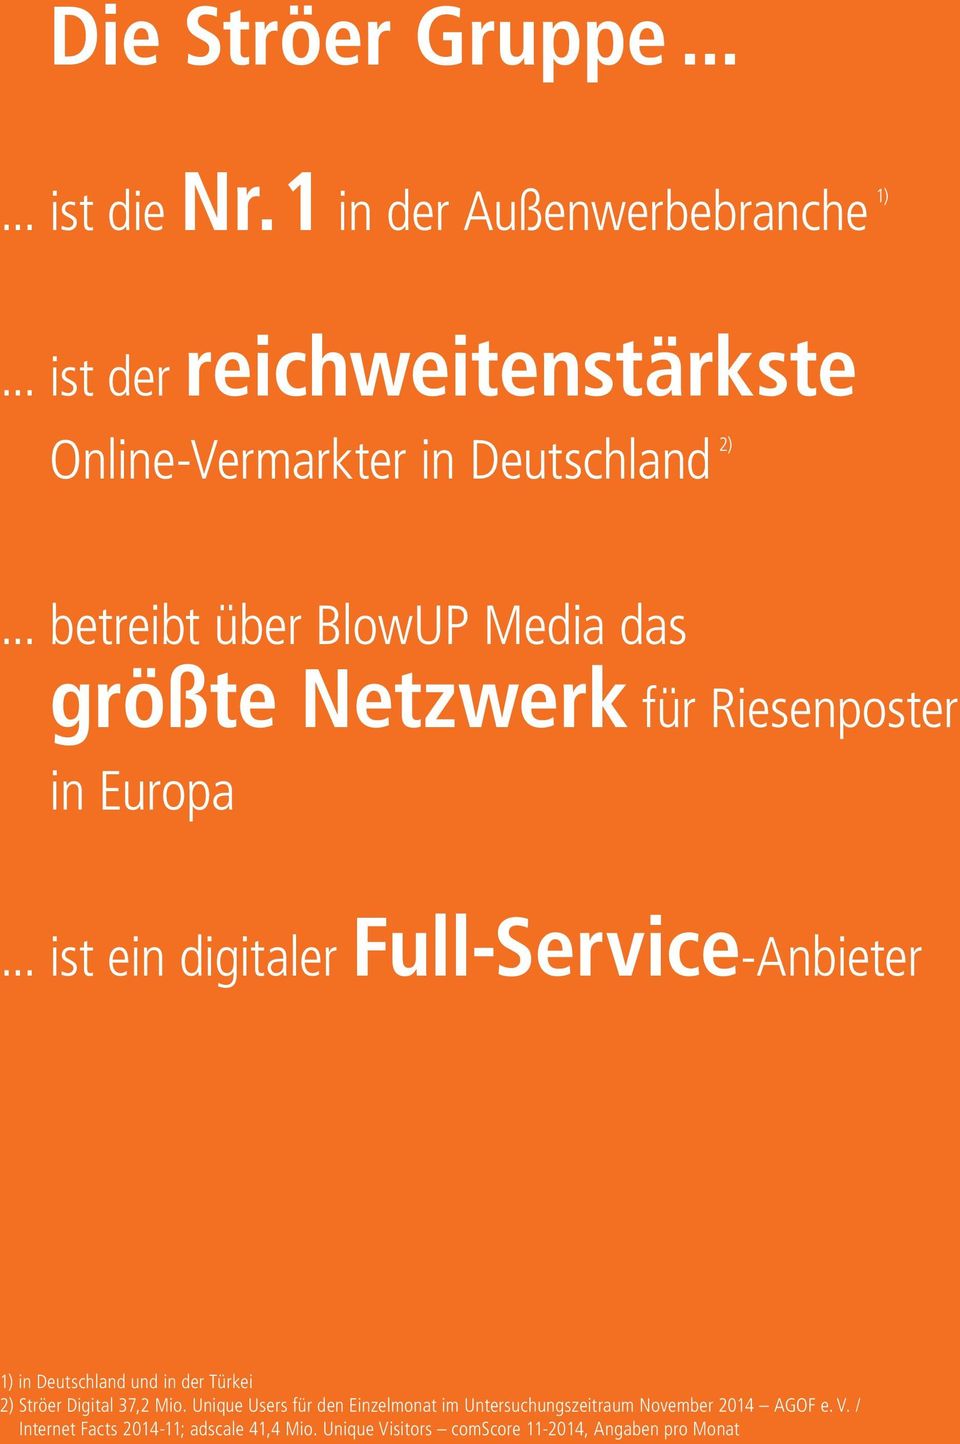 .. betreibt über BlowUP Media das größte Netzwerk für Riesenposter in Europa.